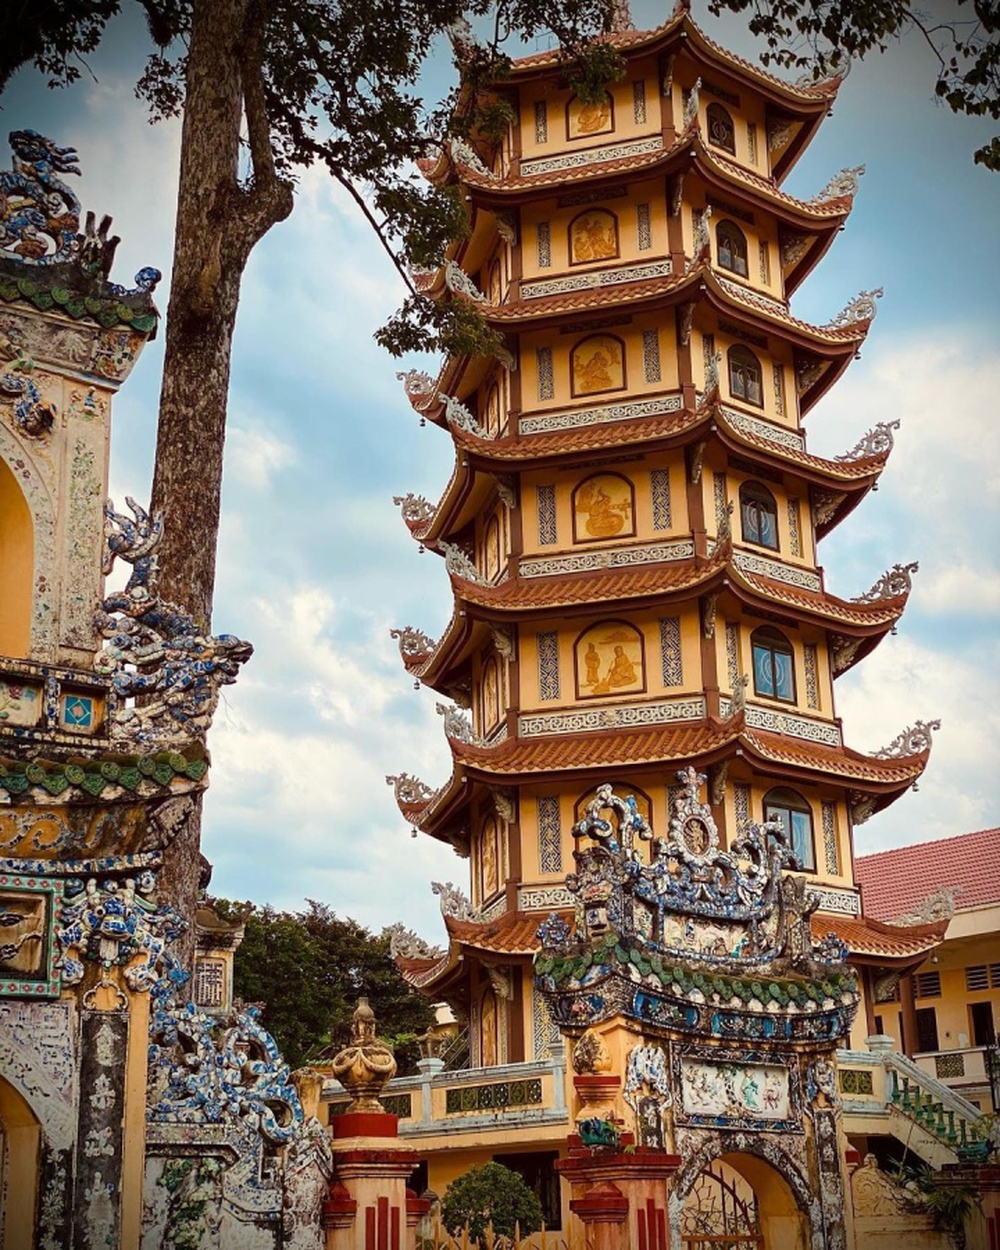 Ngôi chùa cổ 300 tuổi có tượng Phật nằm trên mái dài nhất châu Á ở Bình Dương - Ảnh 5.